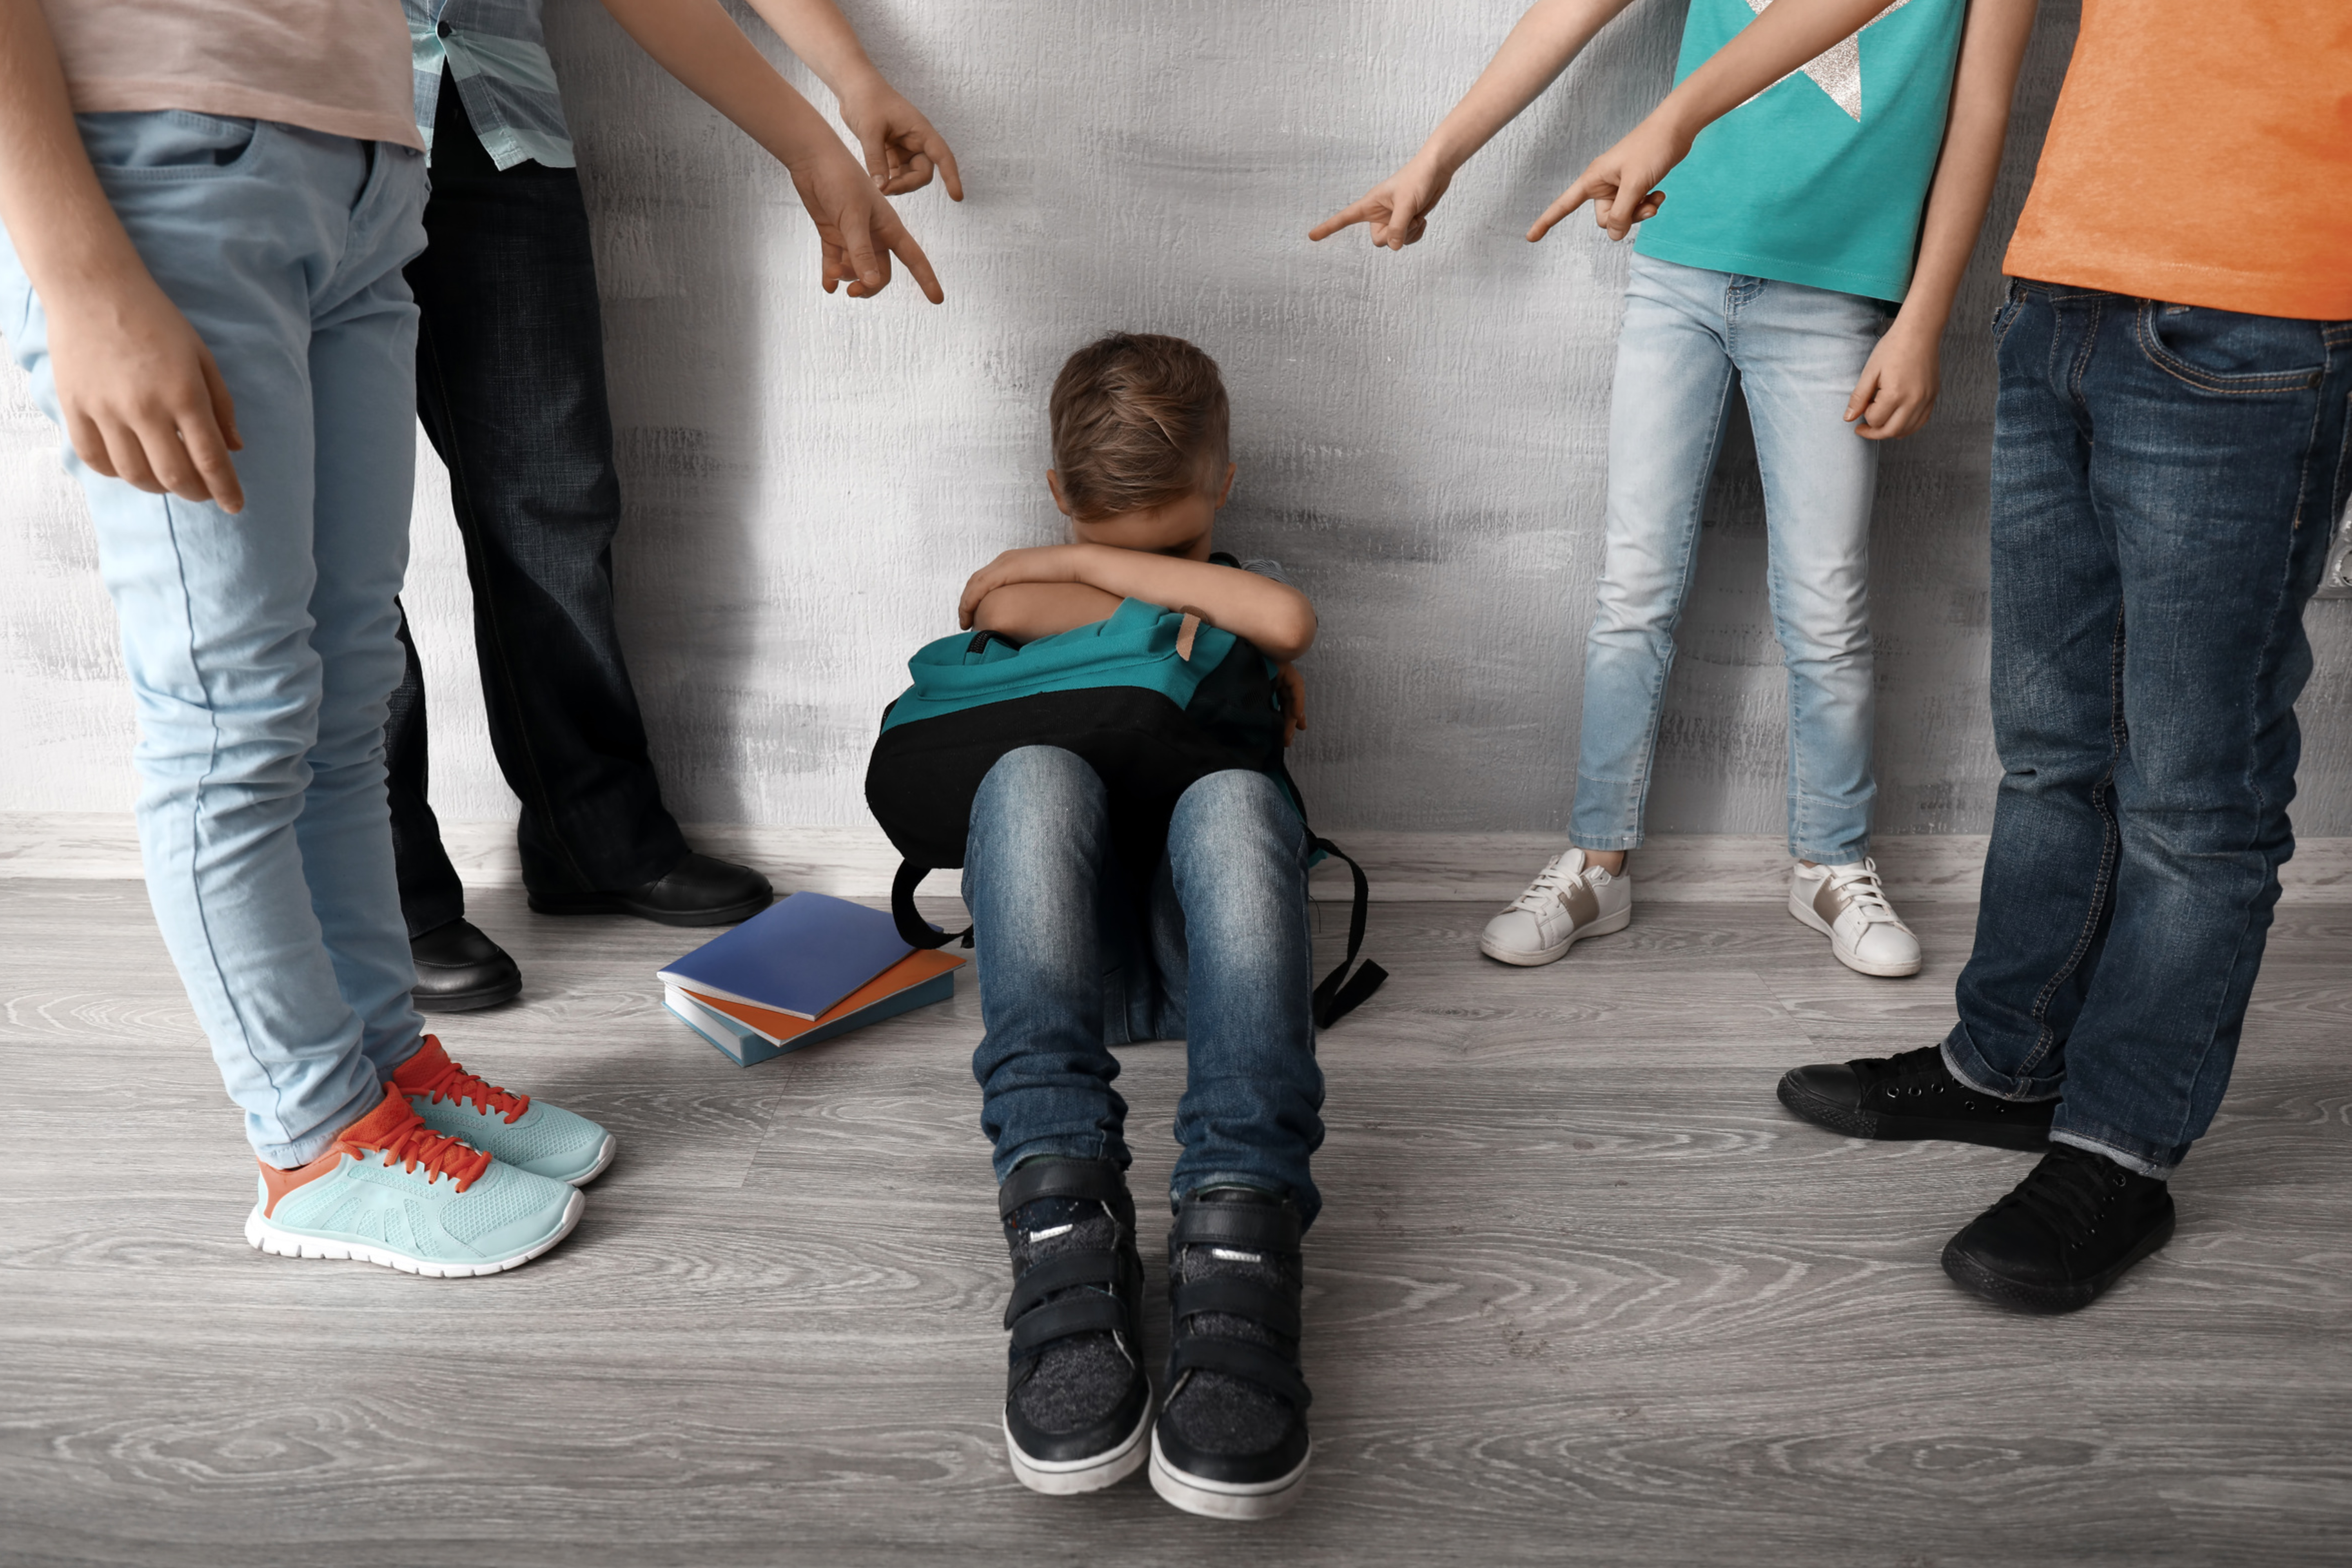 Social alerta sobre riscos do bullying nas escolas